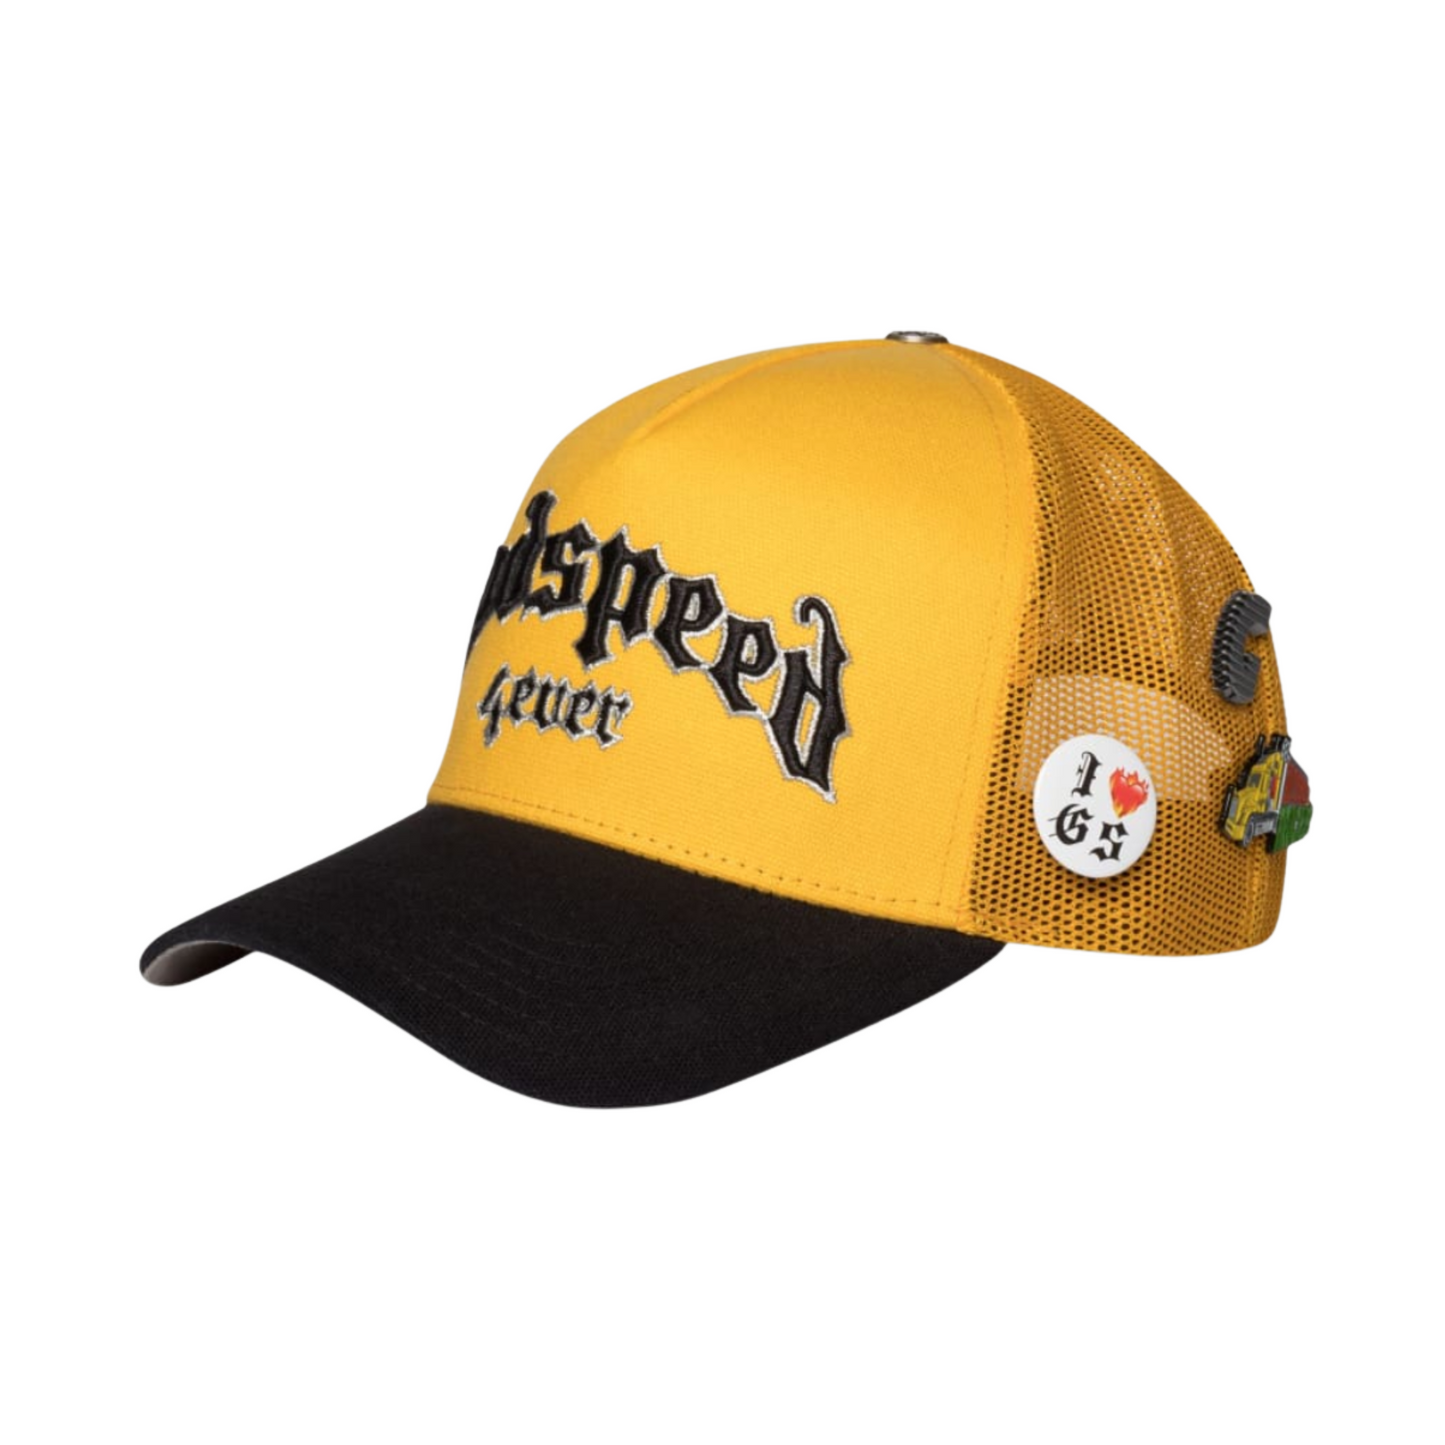 Godspeed Forever Trucker Hat (Yellow/Black)